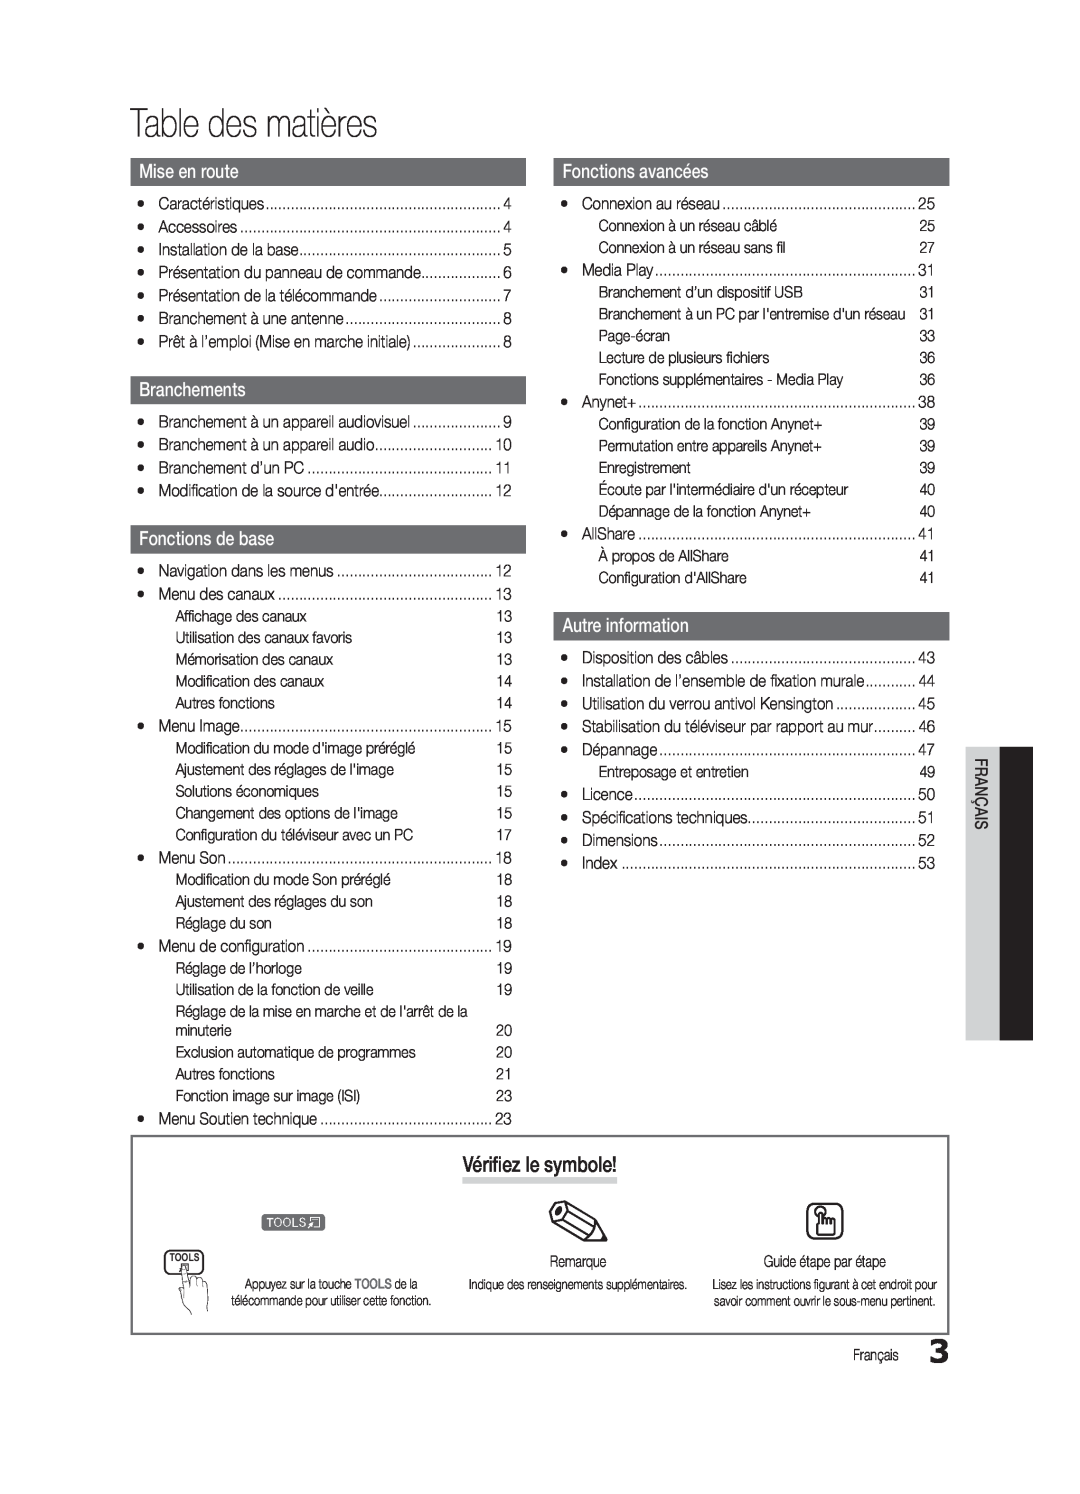 Samsung UC6300-ZC user manual Table des matières, Vérifiez le symbole, Fonctions avancées, Autre information, Branchements 